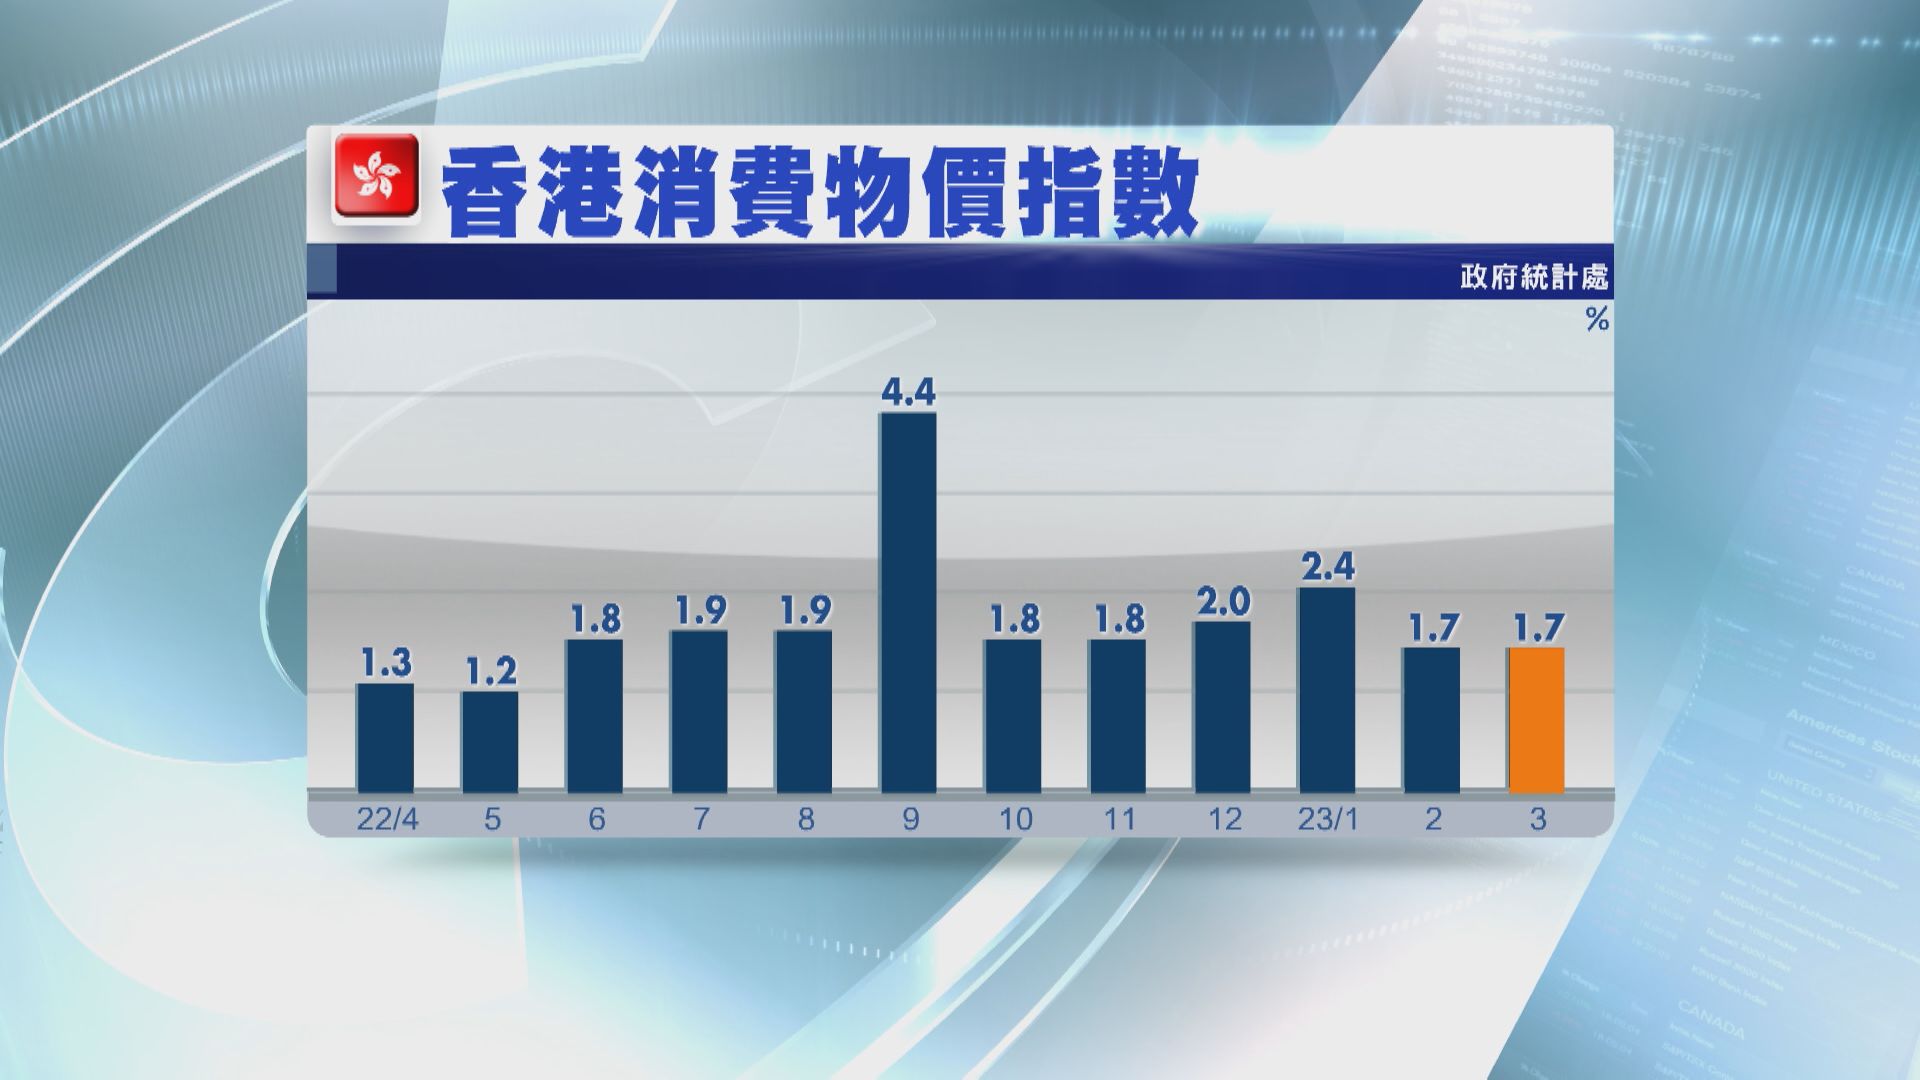 【物價數據】香港上月通脹1.7% 低於預期